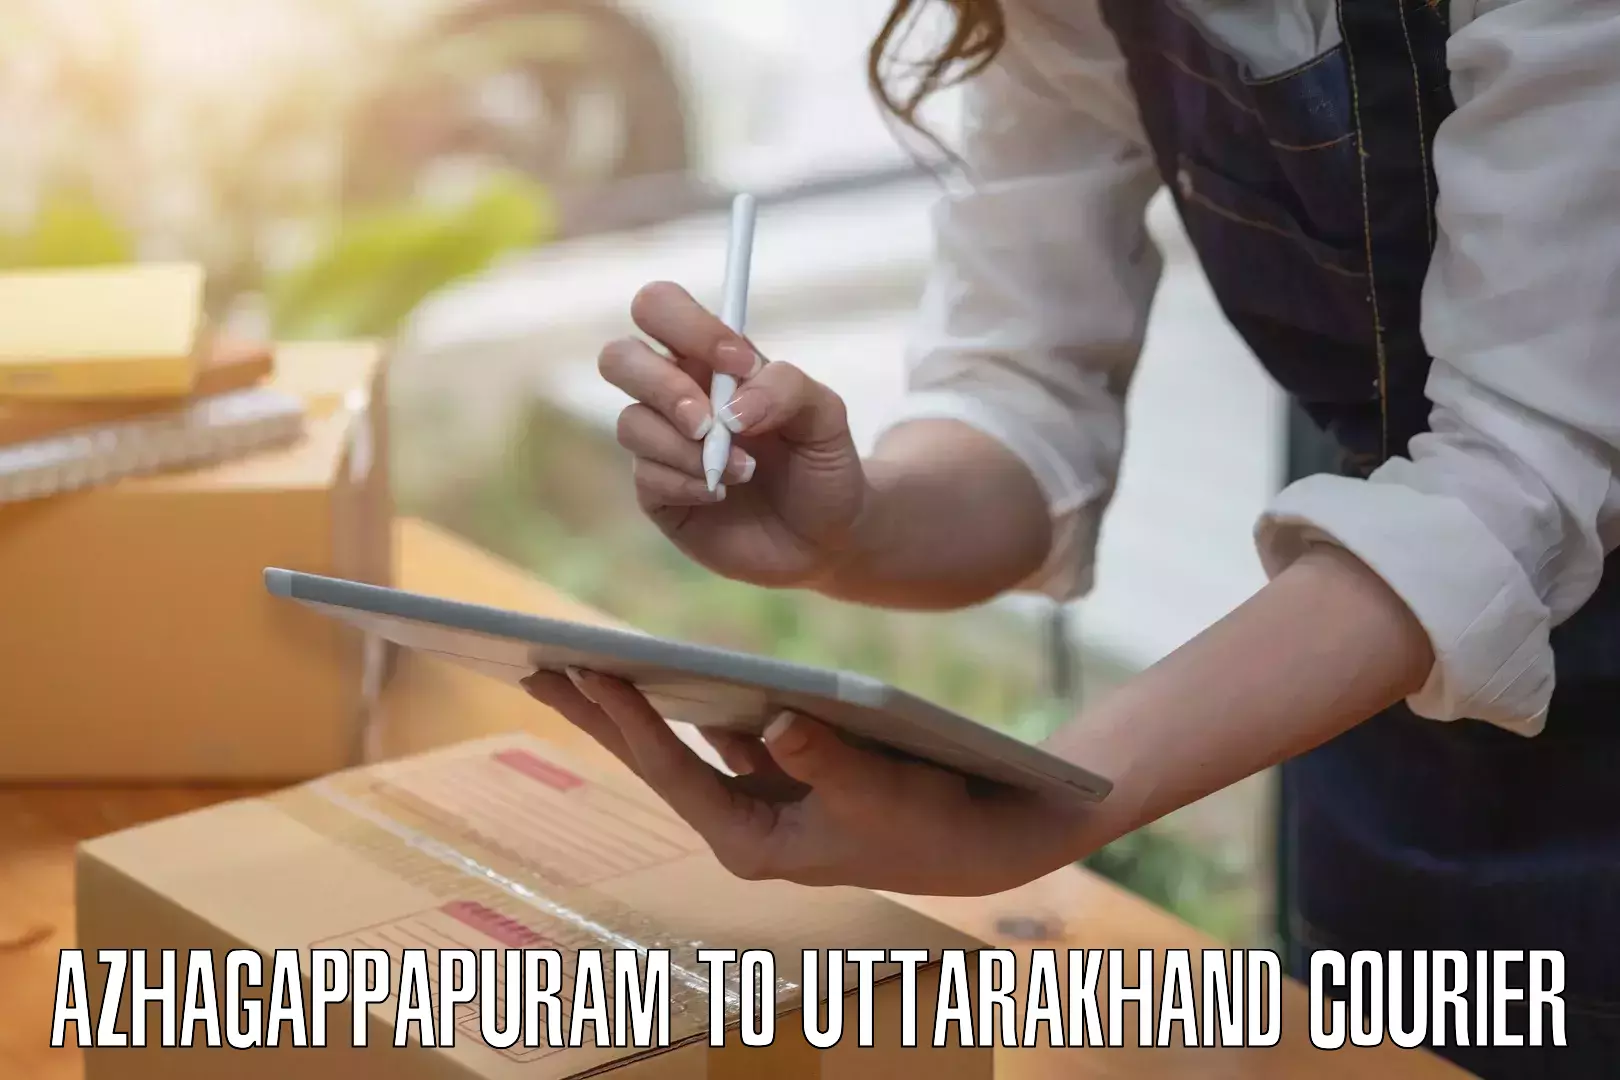 Luggage delivery app Azhagappapuram to Uttarakhand